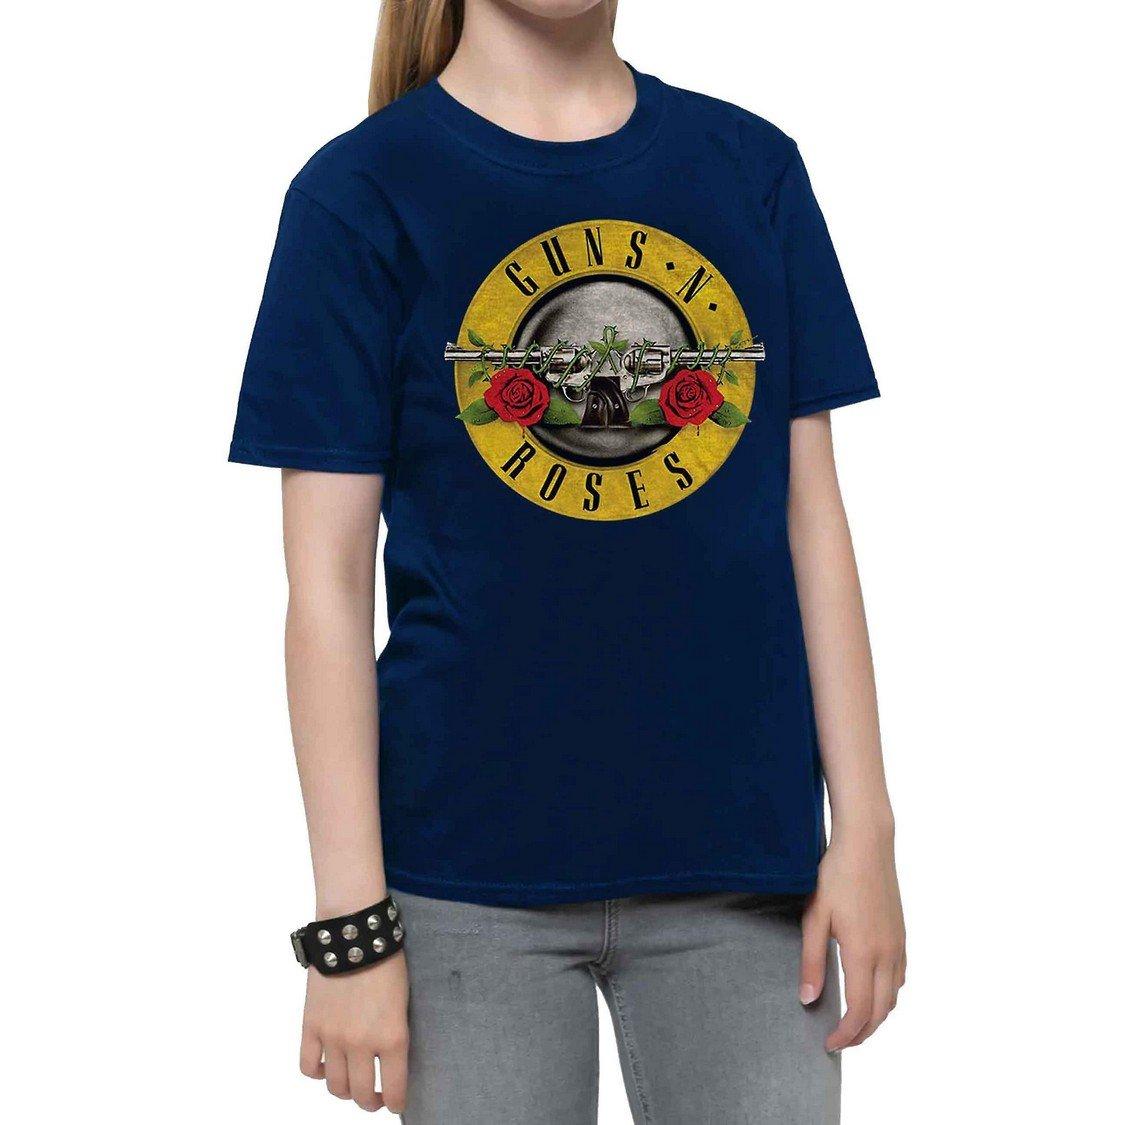 Classic Tshirt Jungen Marine 116 von Guns N Roses